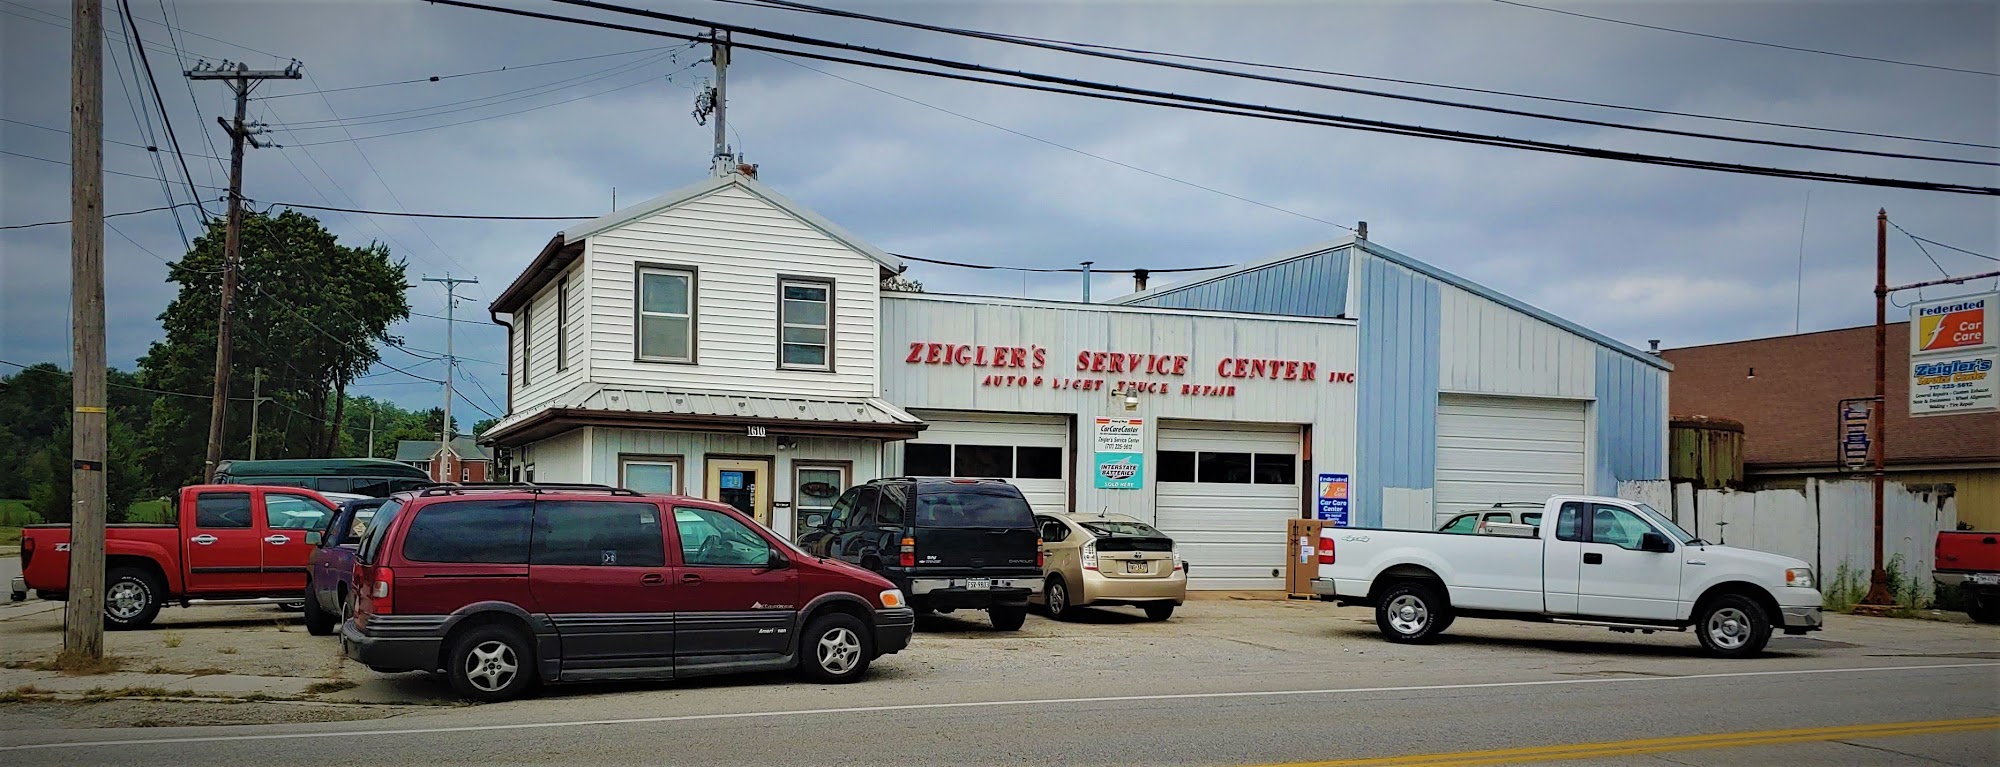 Zeigler's Service Center, Custom Exhaust, Mufflers, & Welding